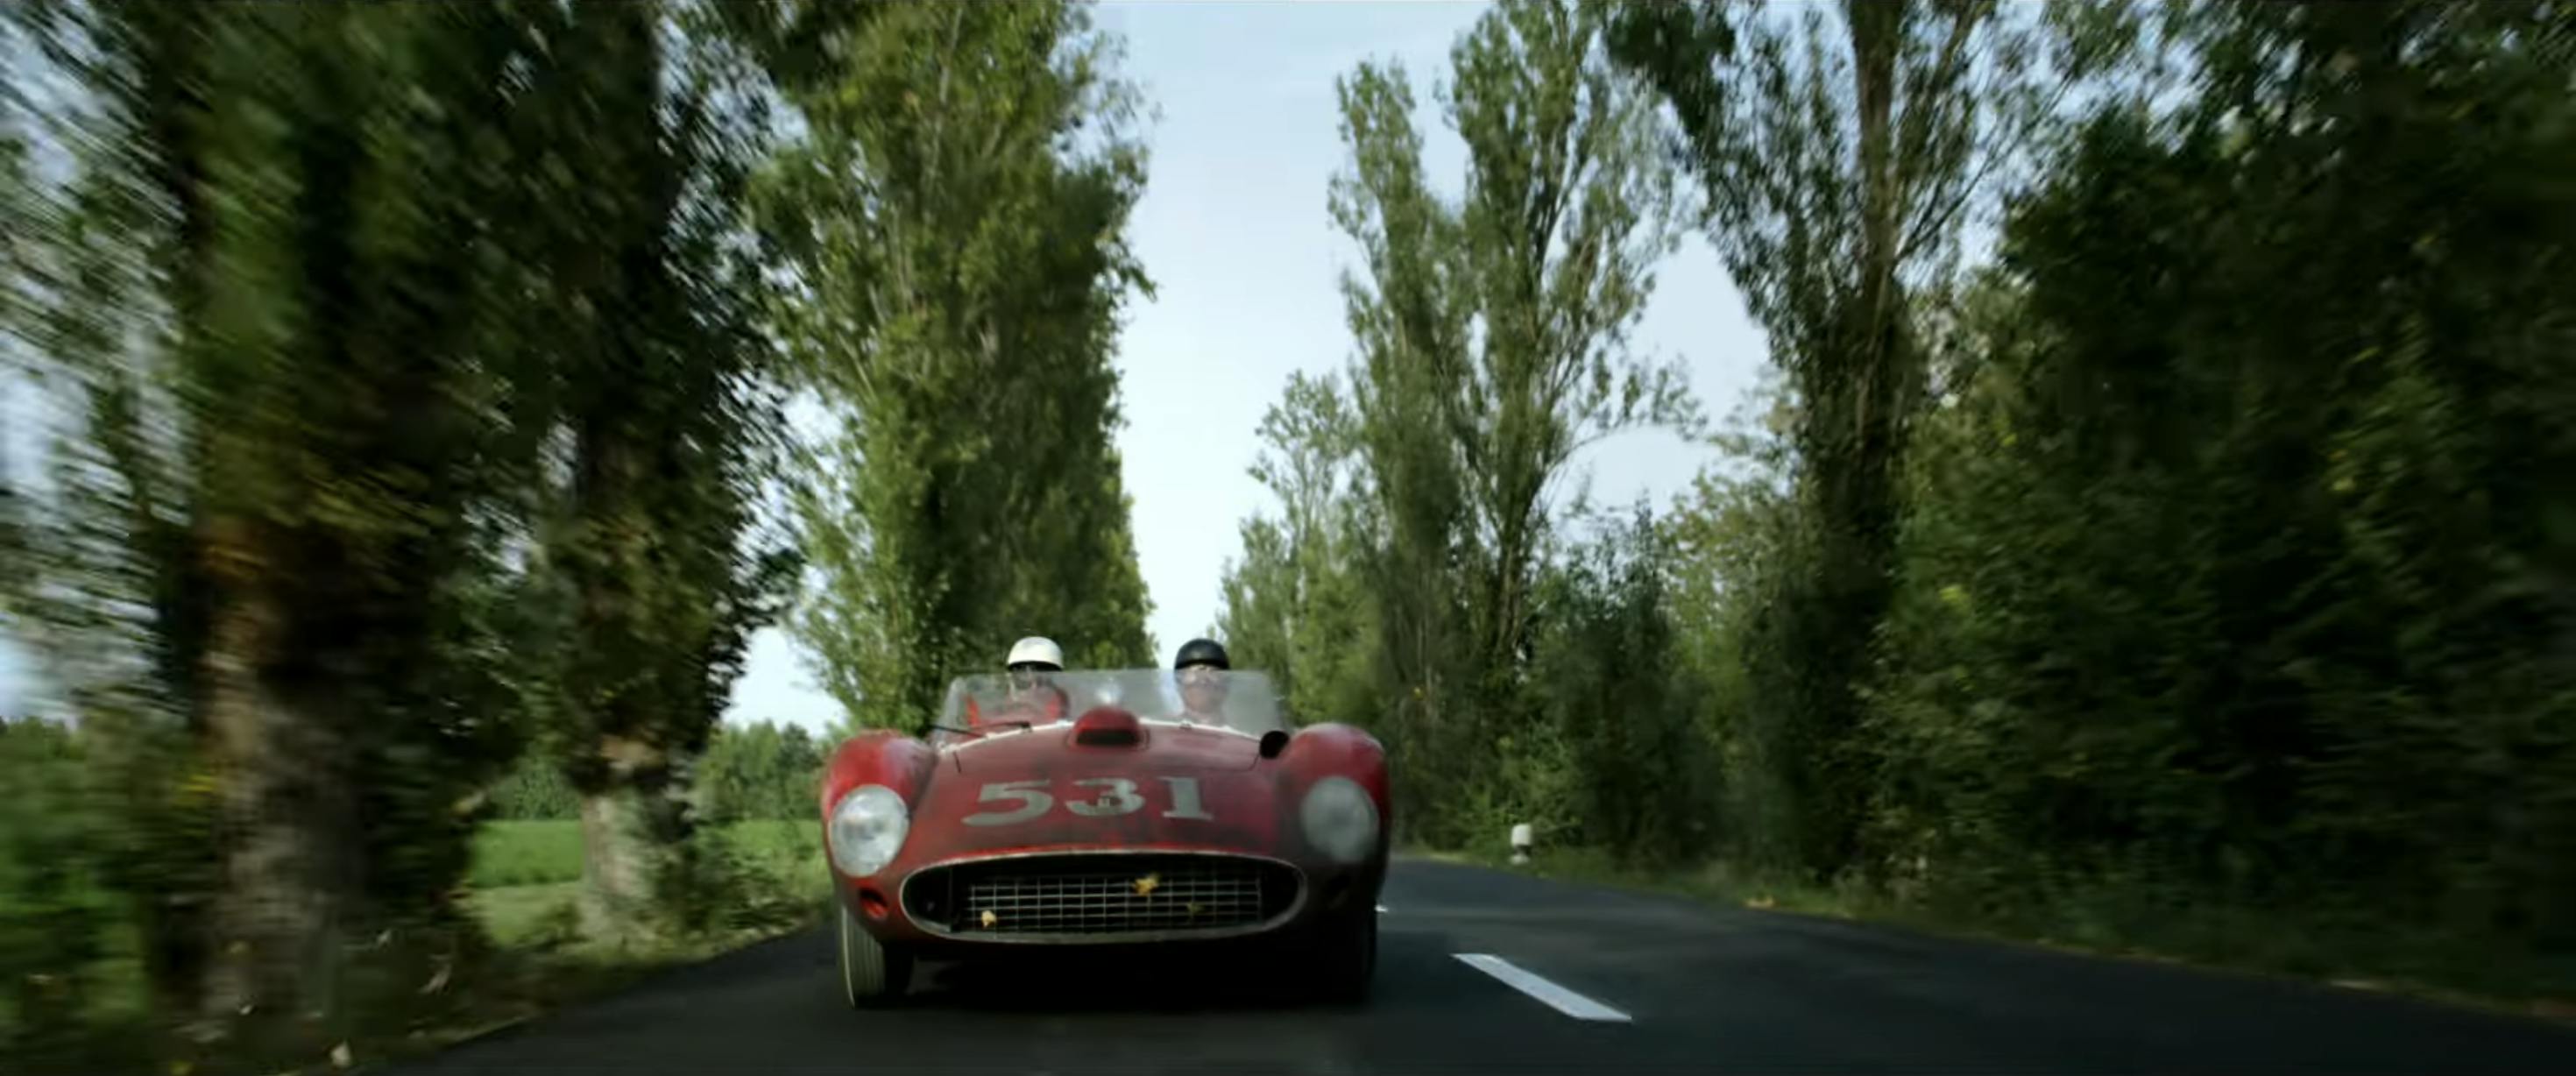 Ferrari film racing action still front